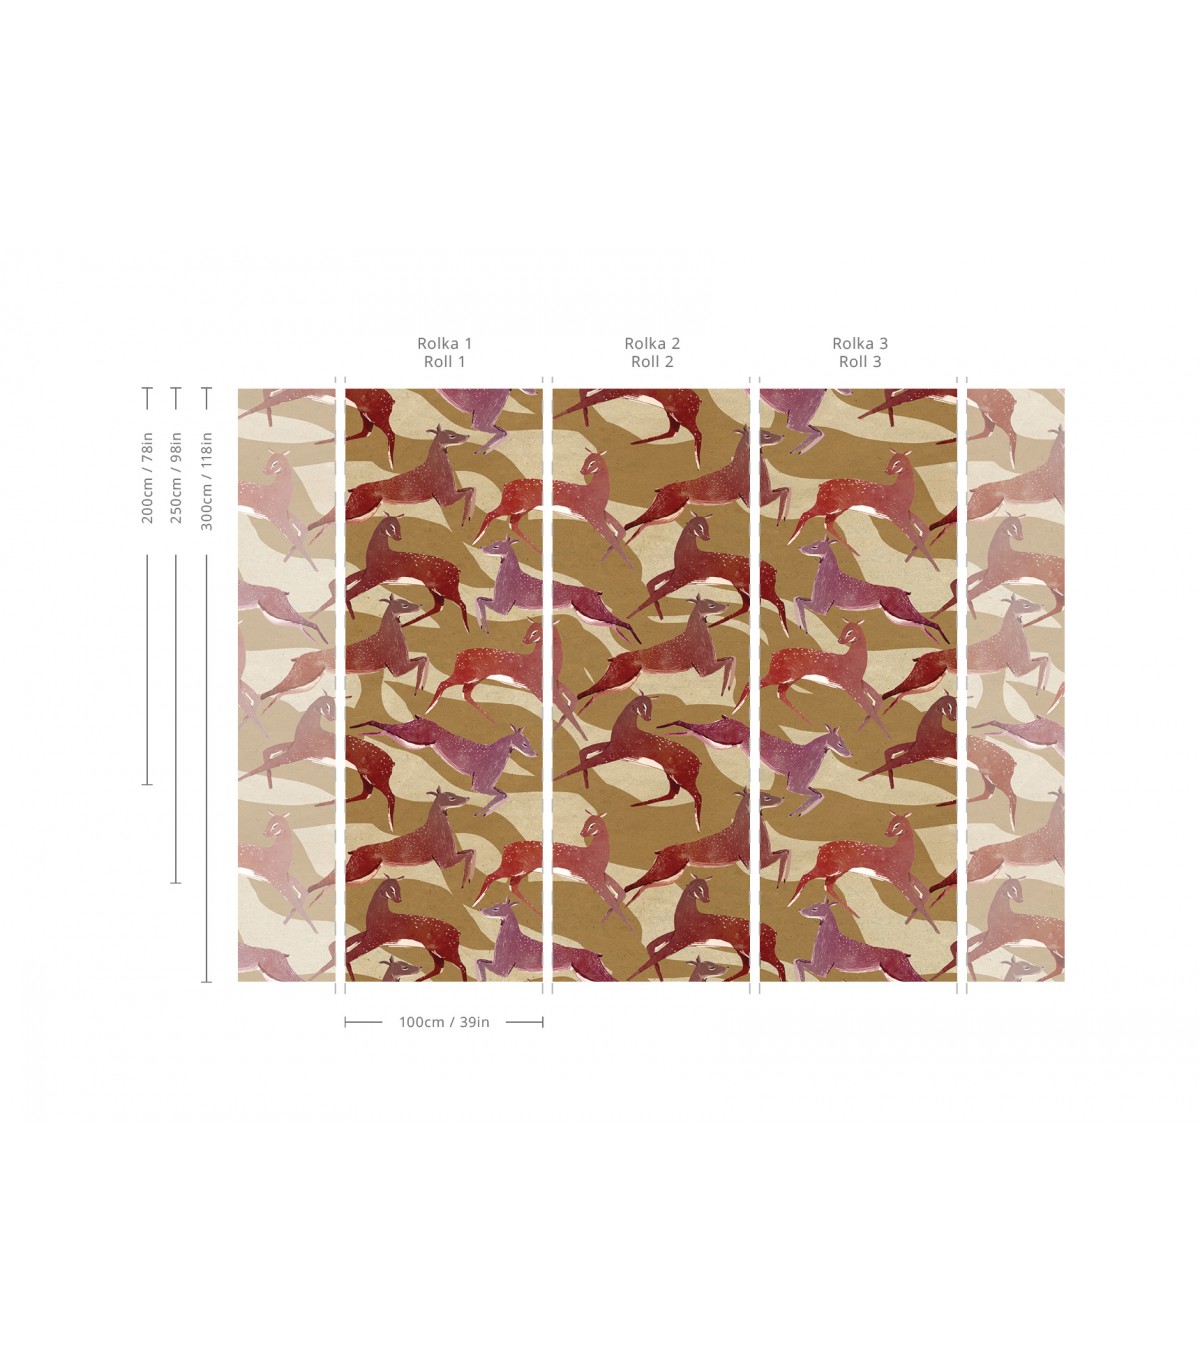 Roe deer wallpaper - Wallcolors  - Exclusive Wallpapers